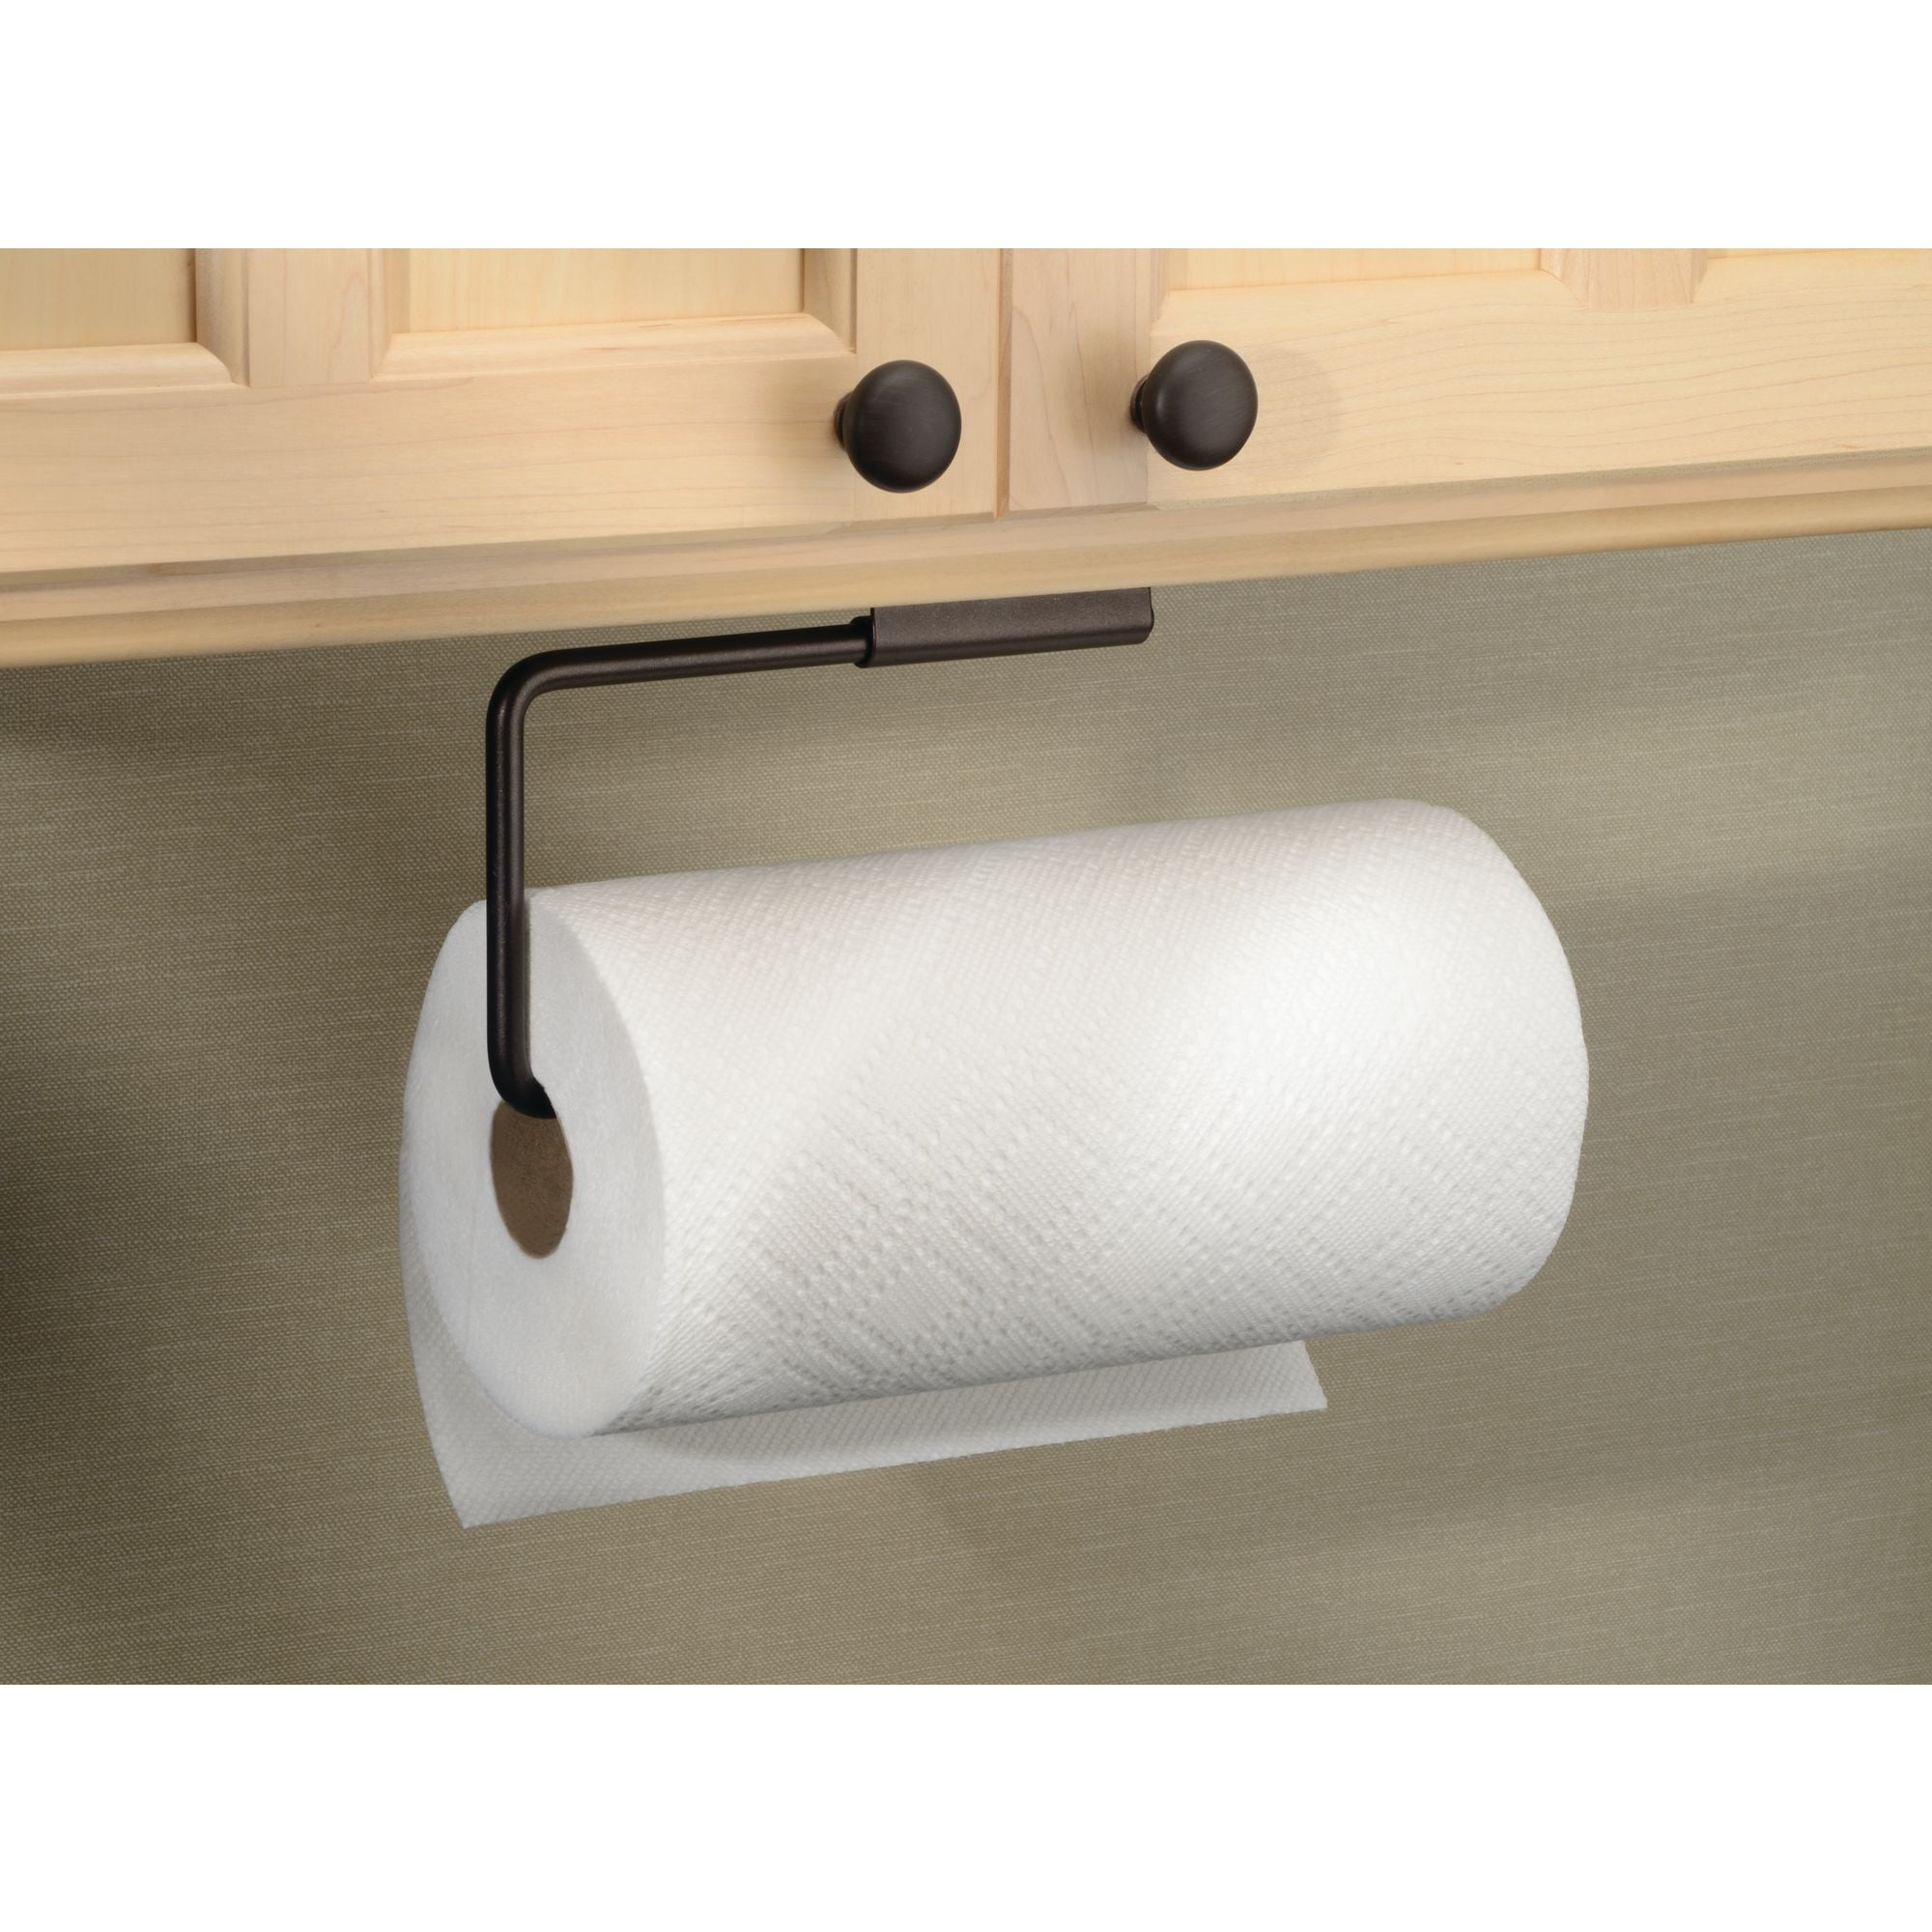 Idesign Swivel Paper Towel Holder For, Under Cabinet Mount Paper Towel Holder Oil Rubbed Bronze